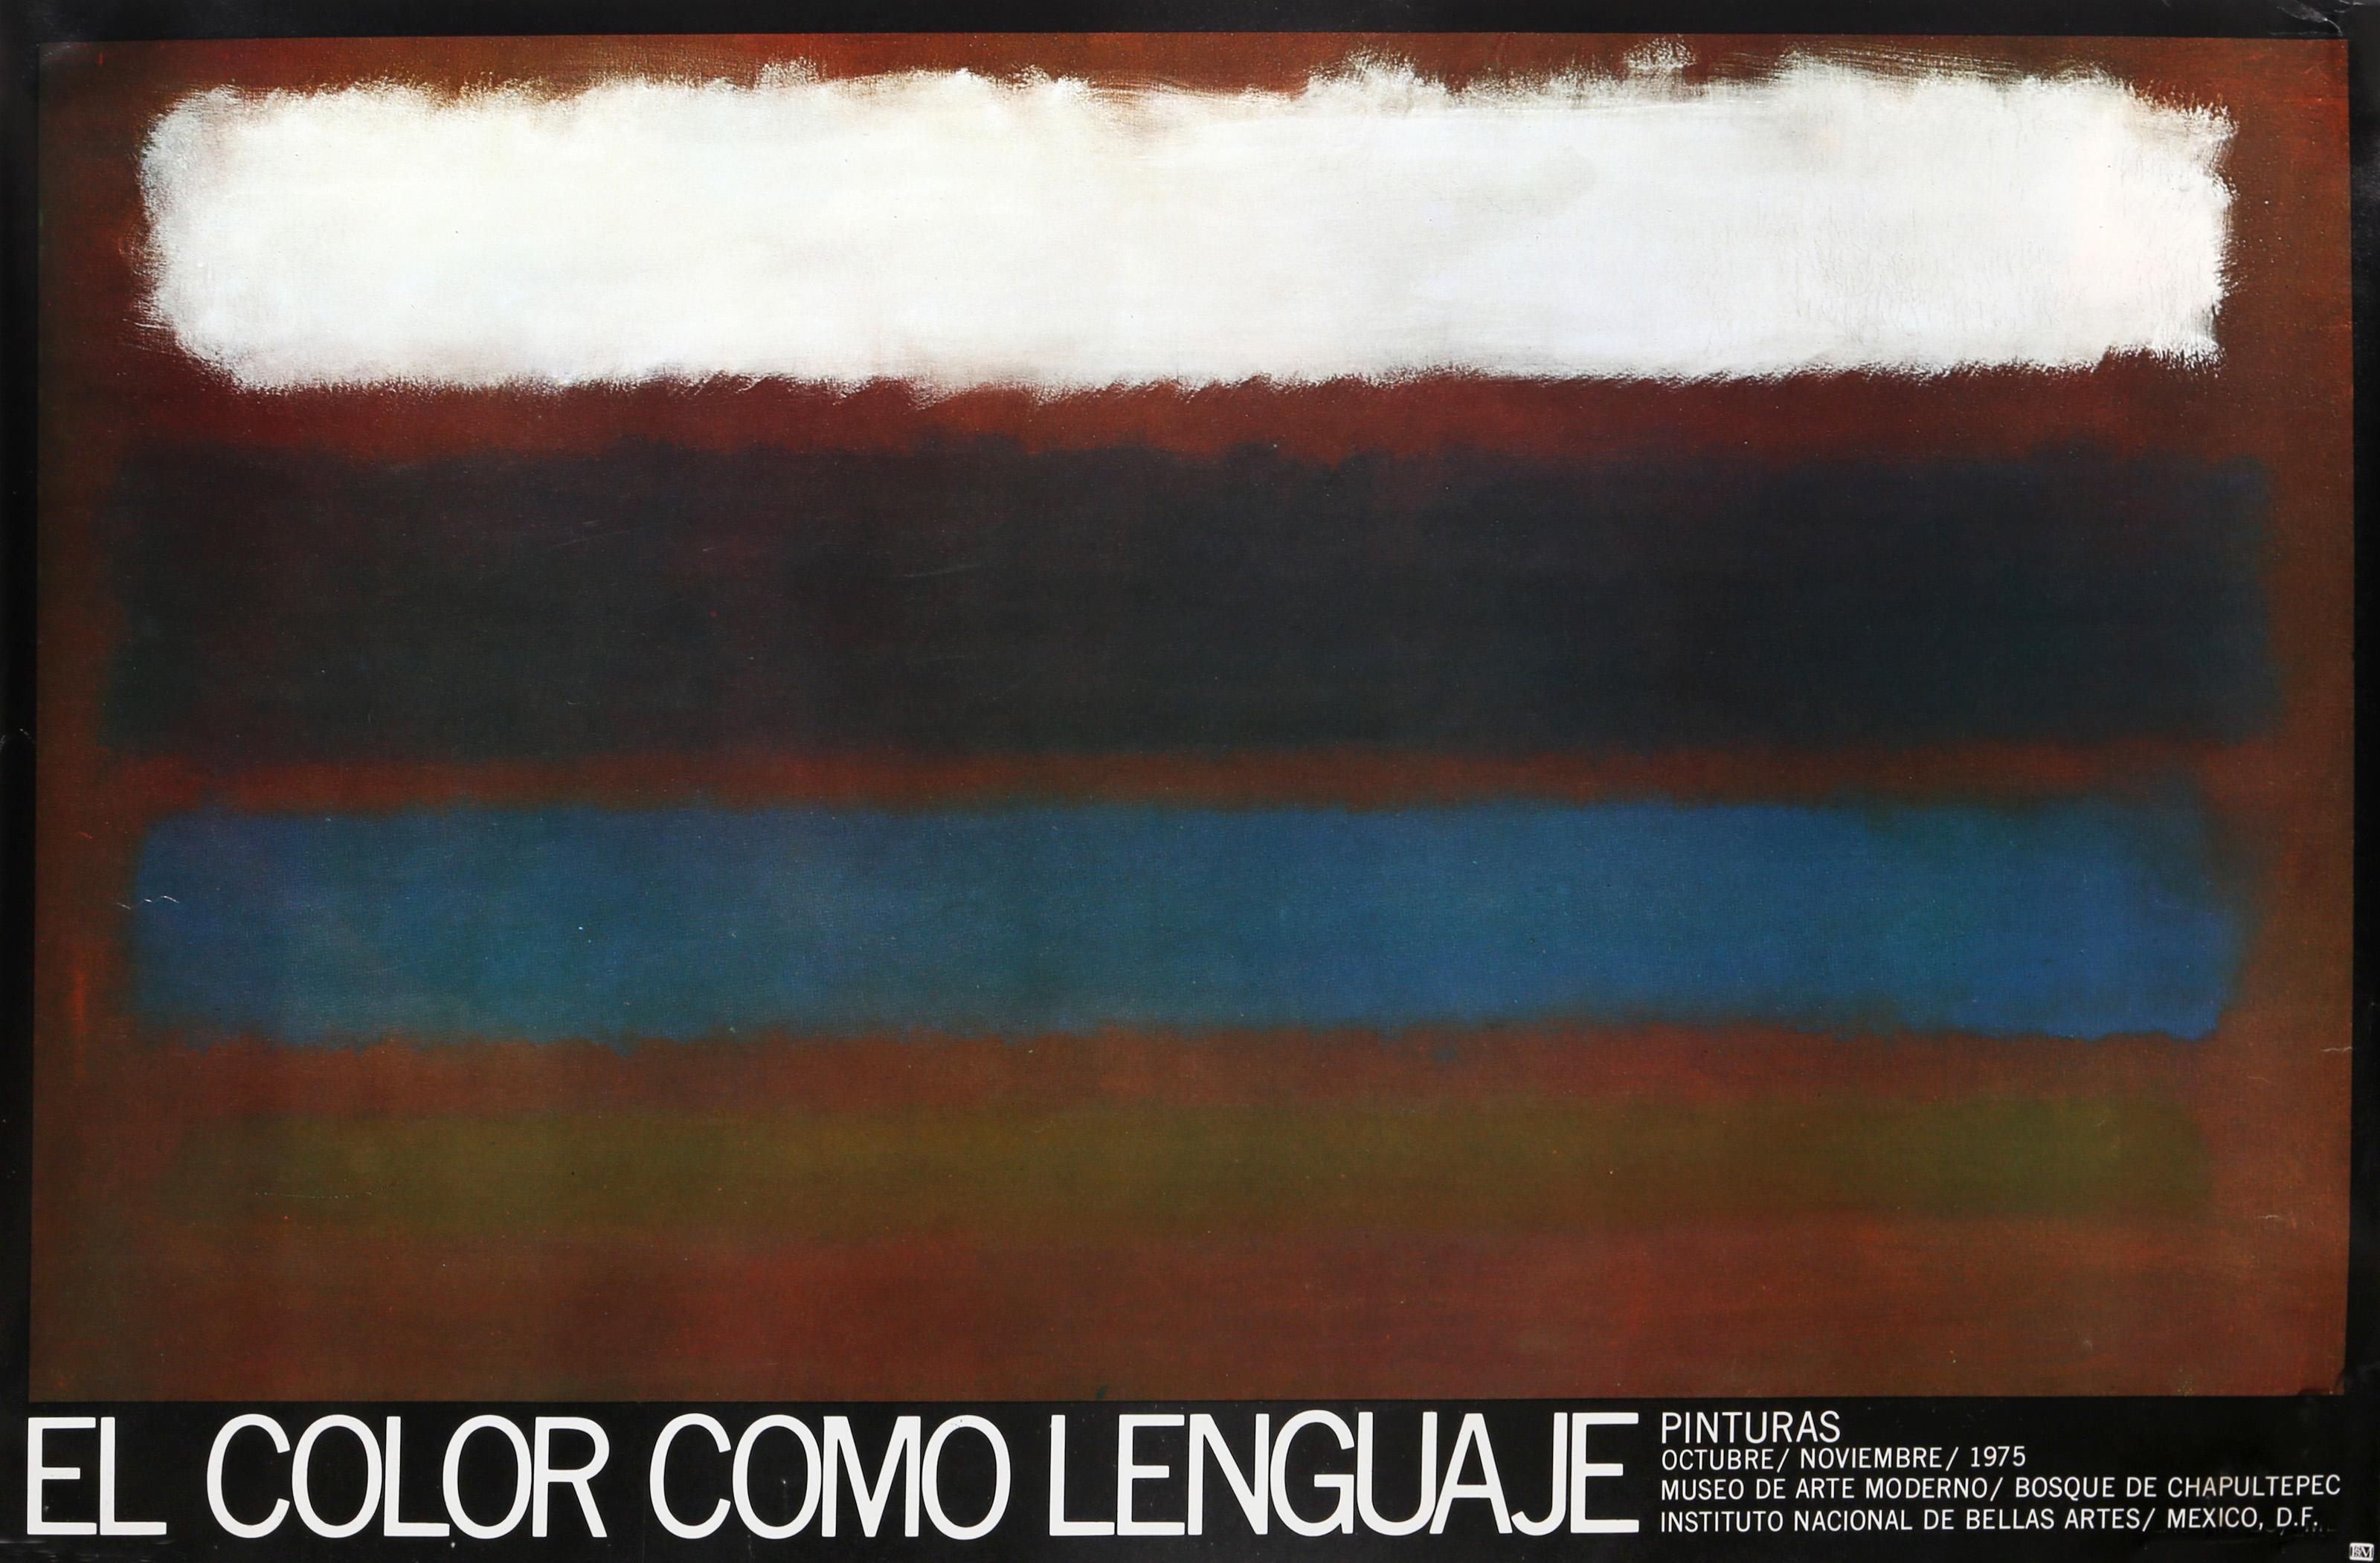 EL COLOR COMO LENGUAJE by Mark Rothko, 1975